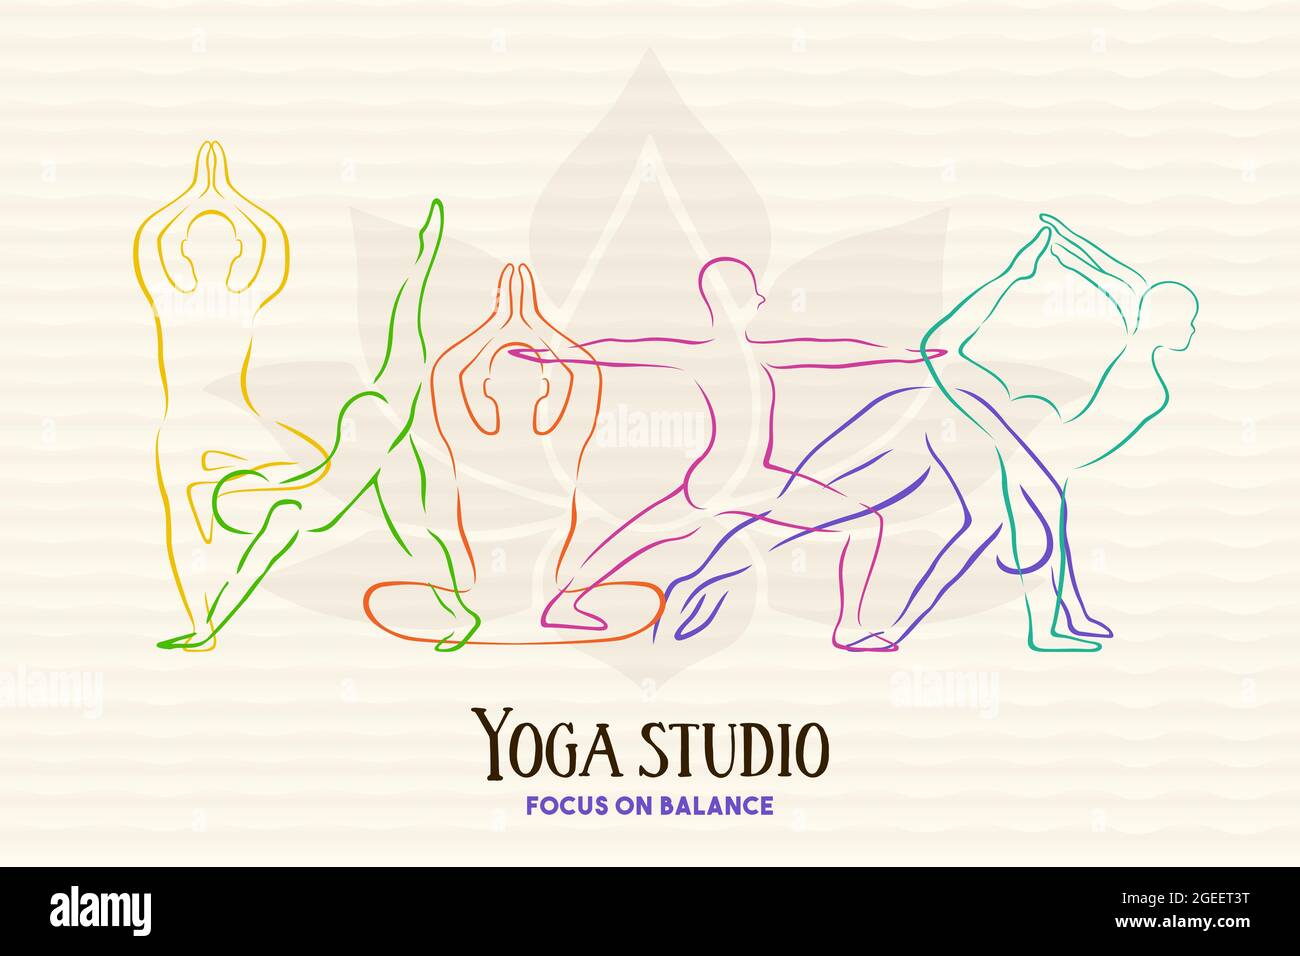 Studio de yoga illustration de personnes exercice groupe faisant la méditation pose avec silhouette colorée. Concept de santé et d'esprit pour le bien-être spirituel. Illustration de Vecteur